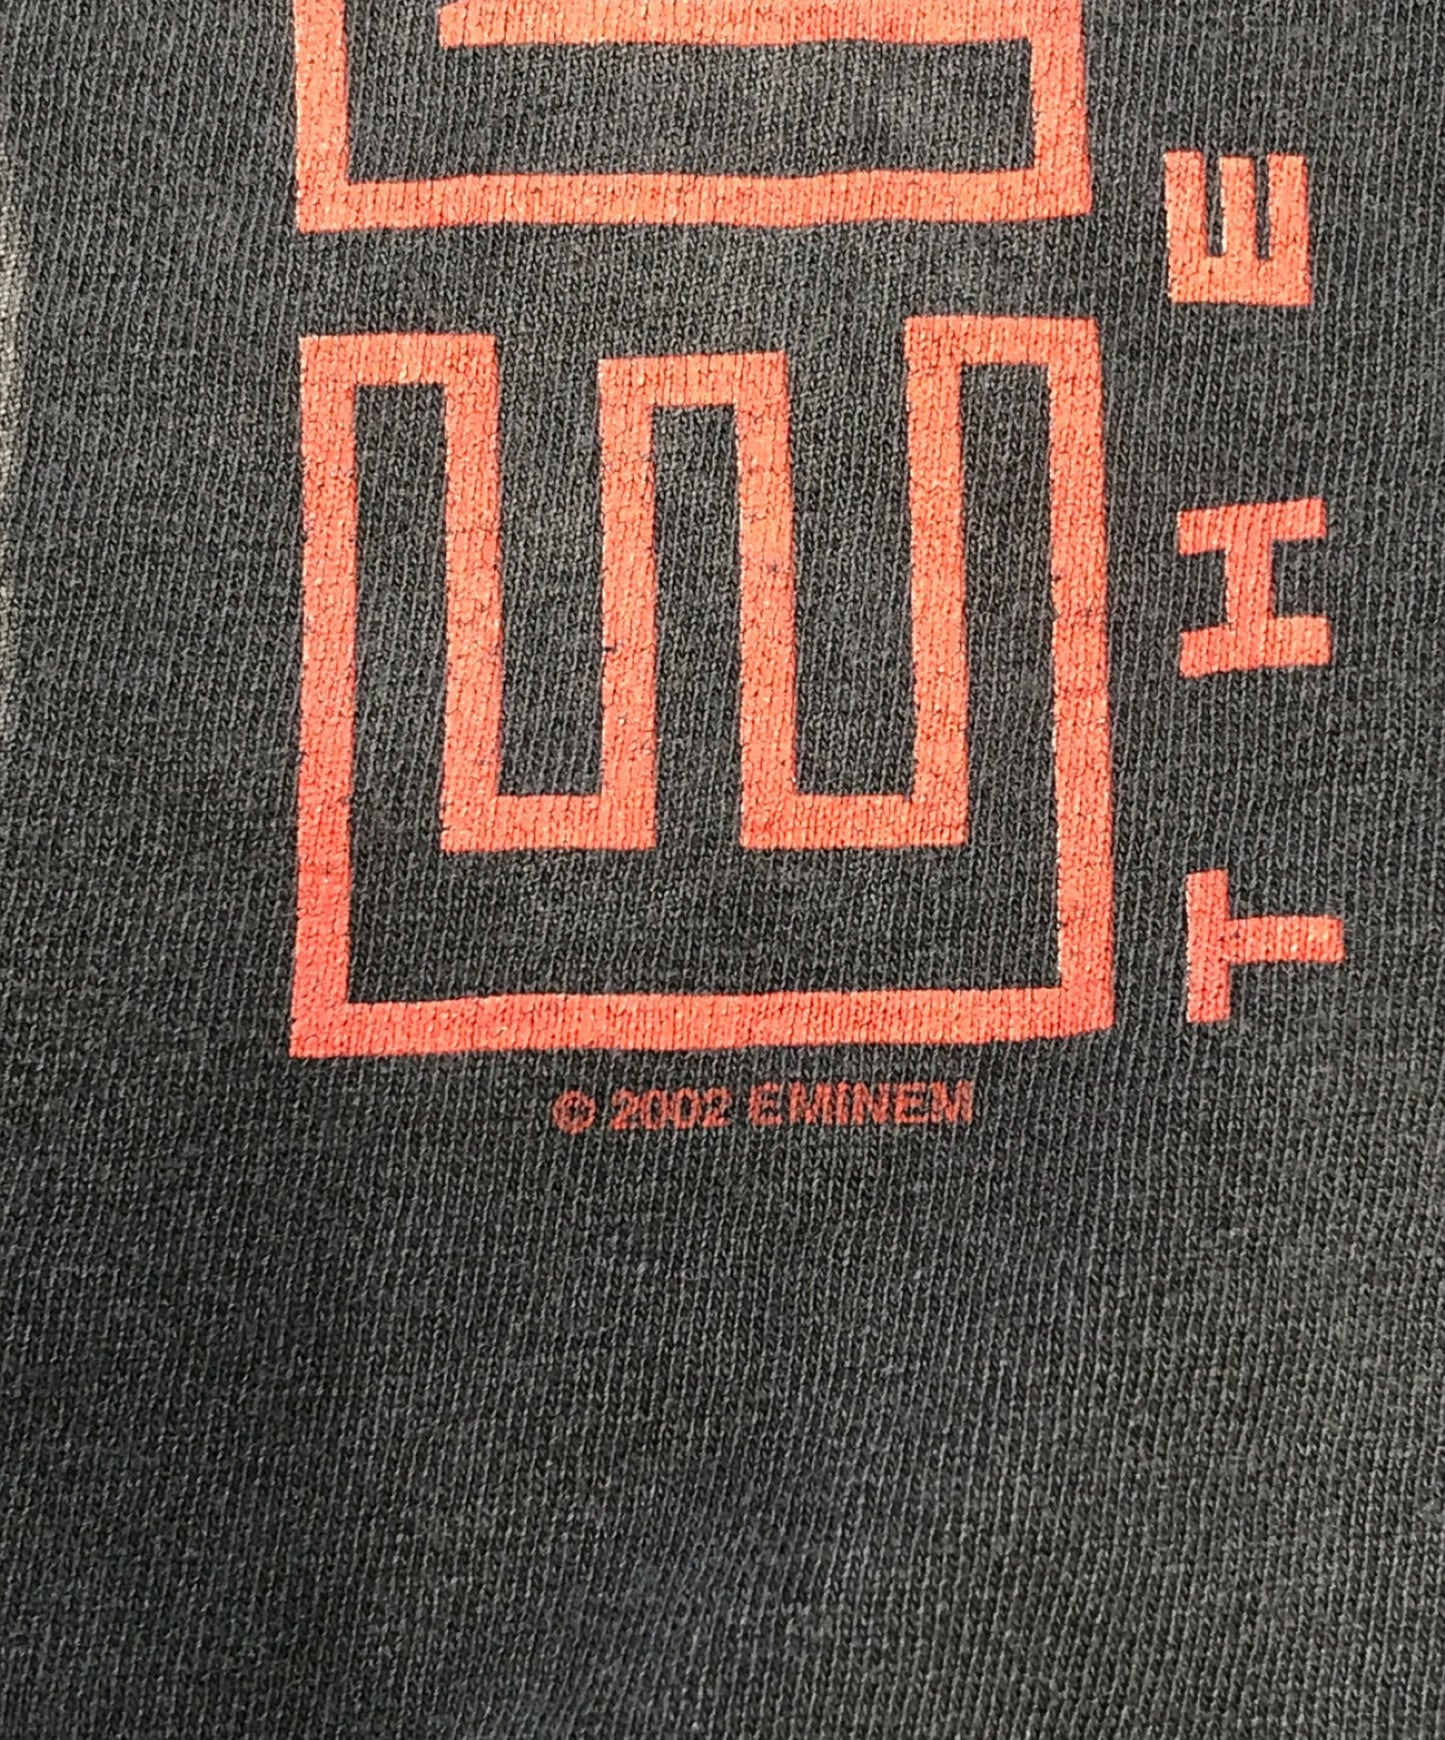 [Pre-owned] EMINEM Artist T-shirt